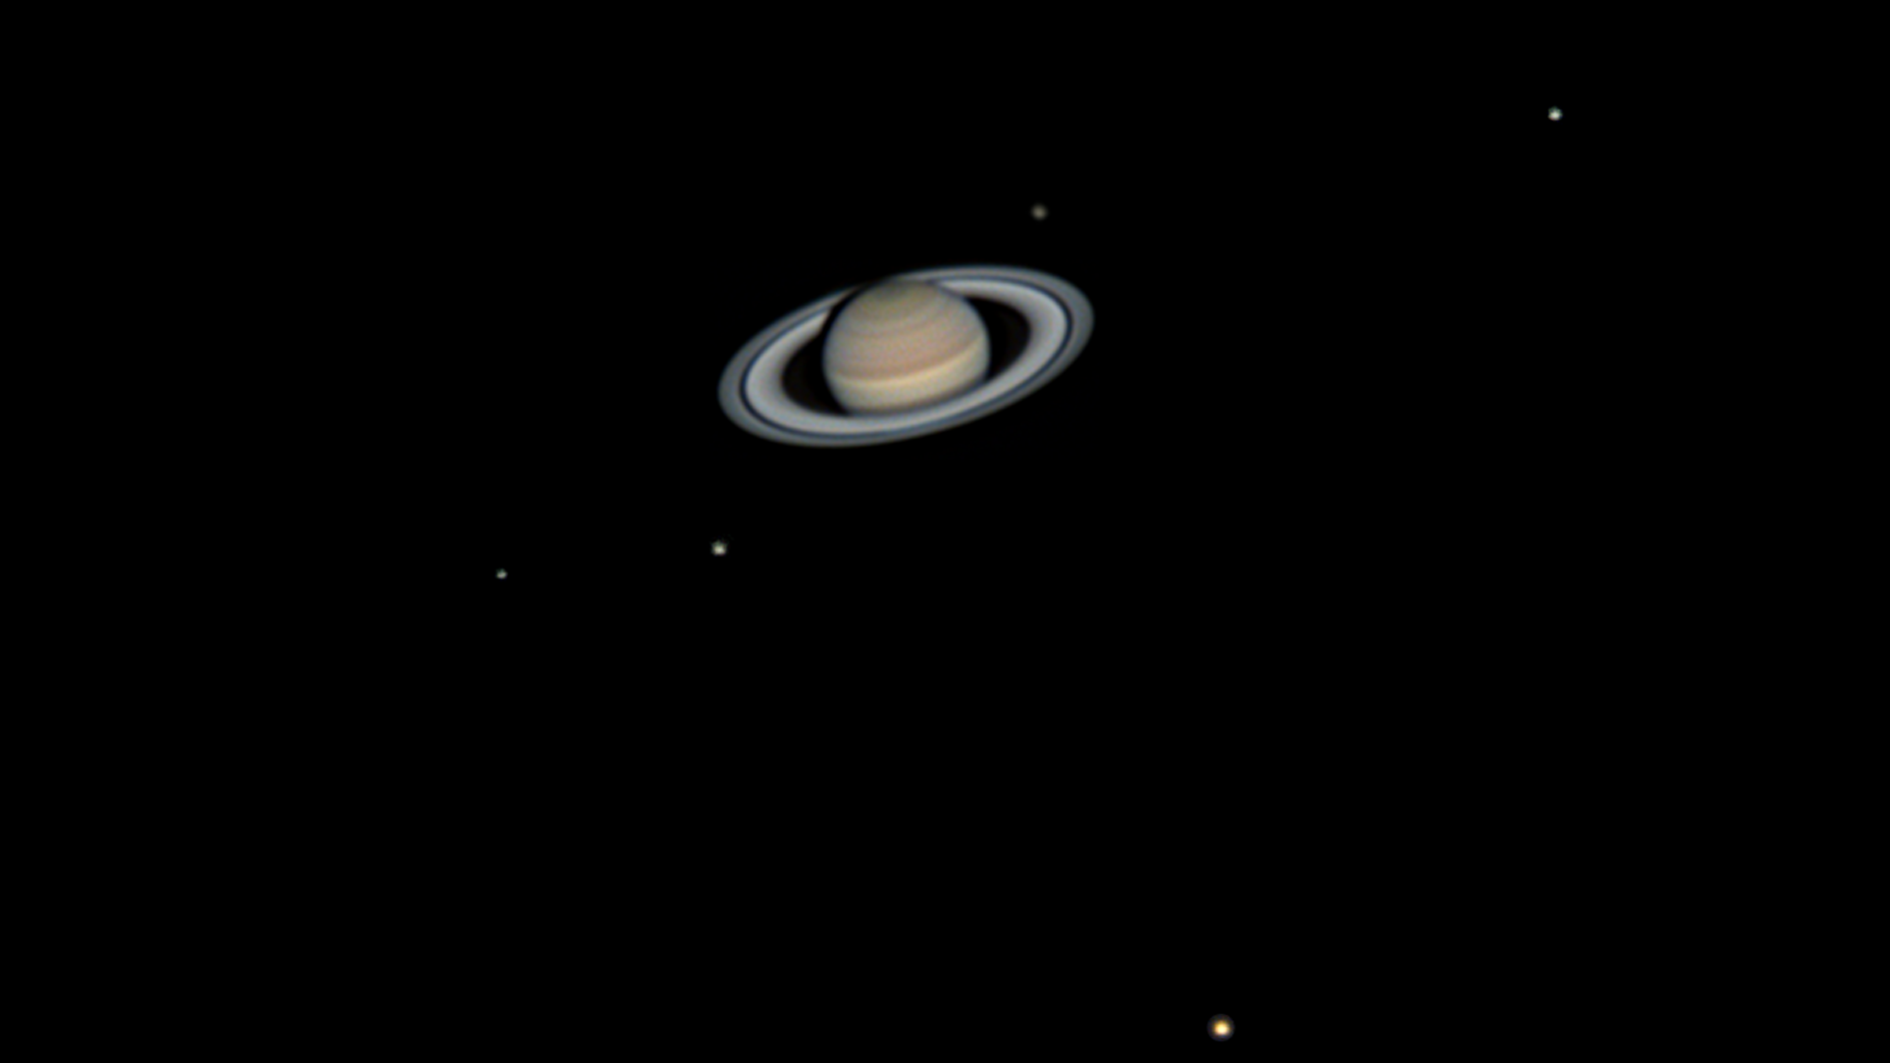 Der Ringplanet Saturn inklusive fünf seiner Monde: Enceladus, Tethys, Dione, Rhea und Titan (Foto von J. Bates mit einem 8“ SC-Teleskop, 2x Barlow, ADC, IR-Sperrfilter, ZWO ASI 224MC)